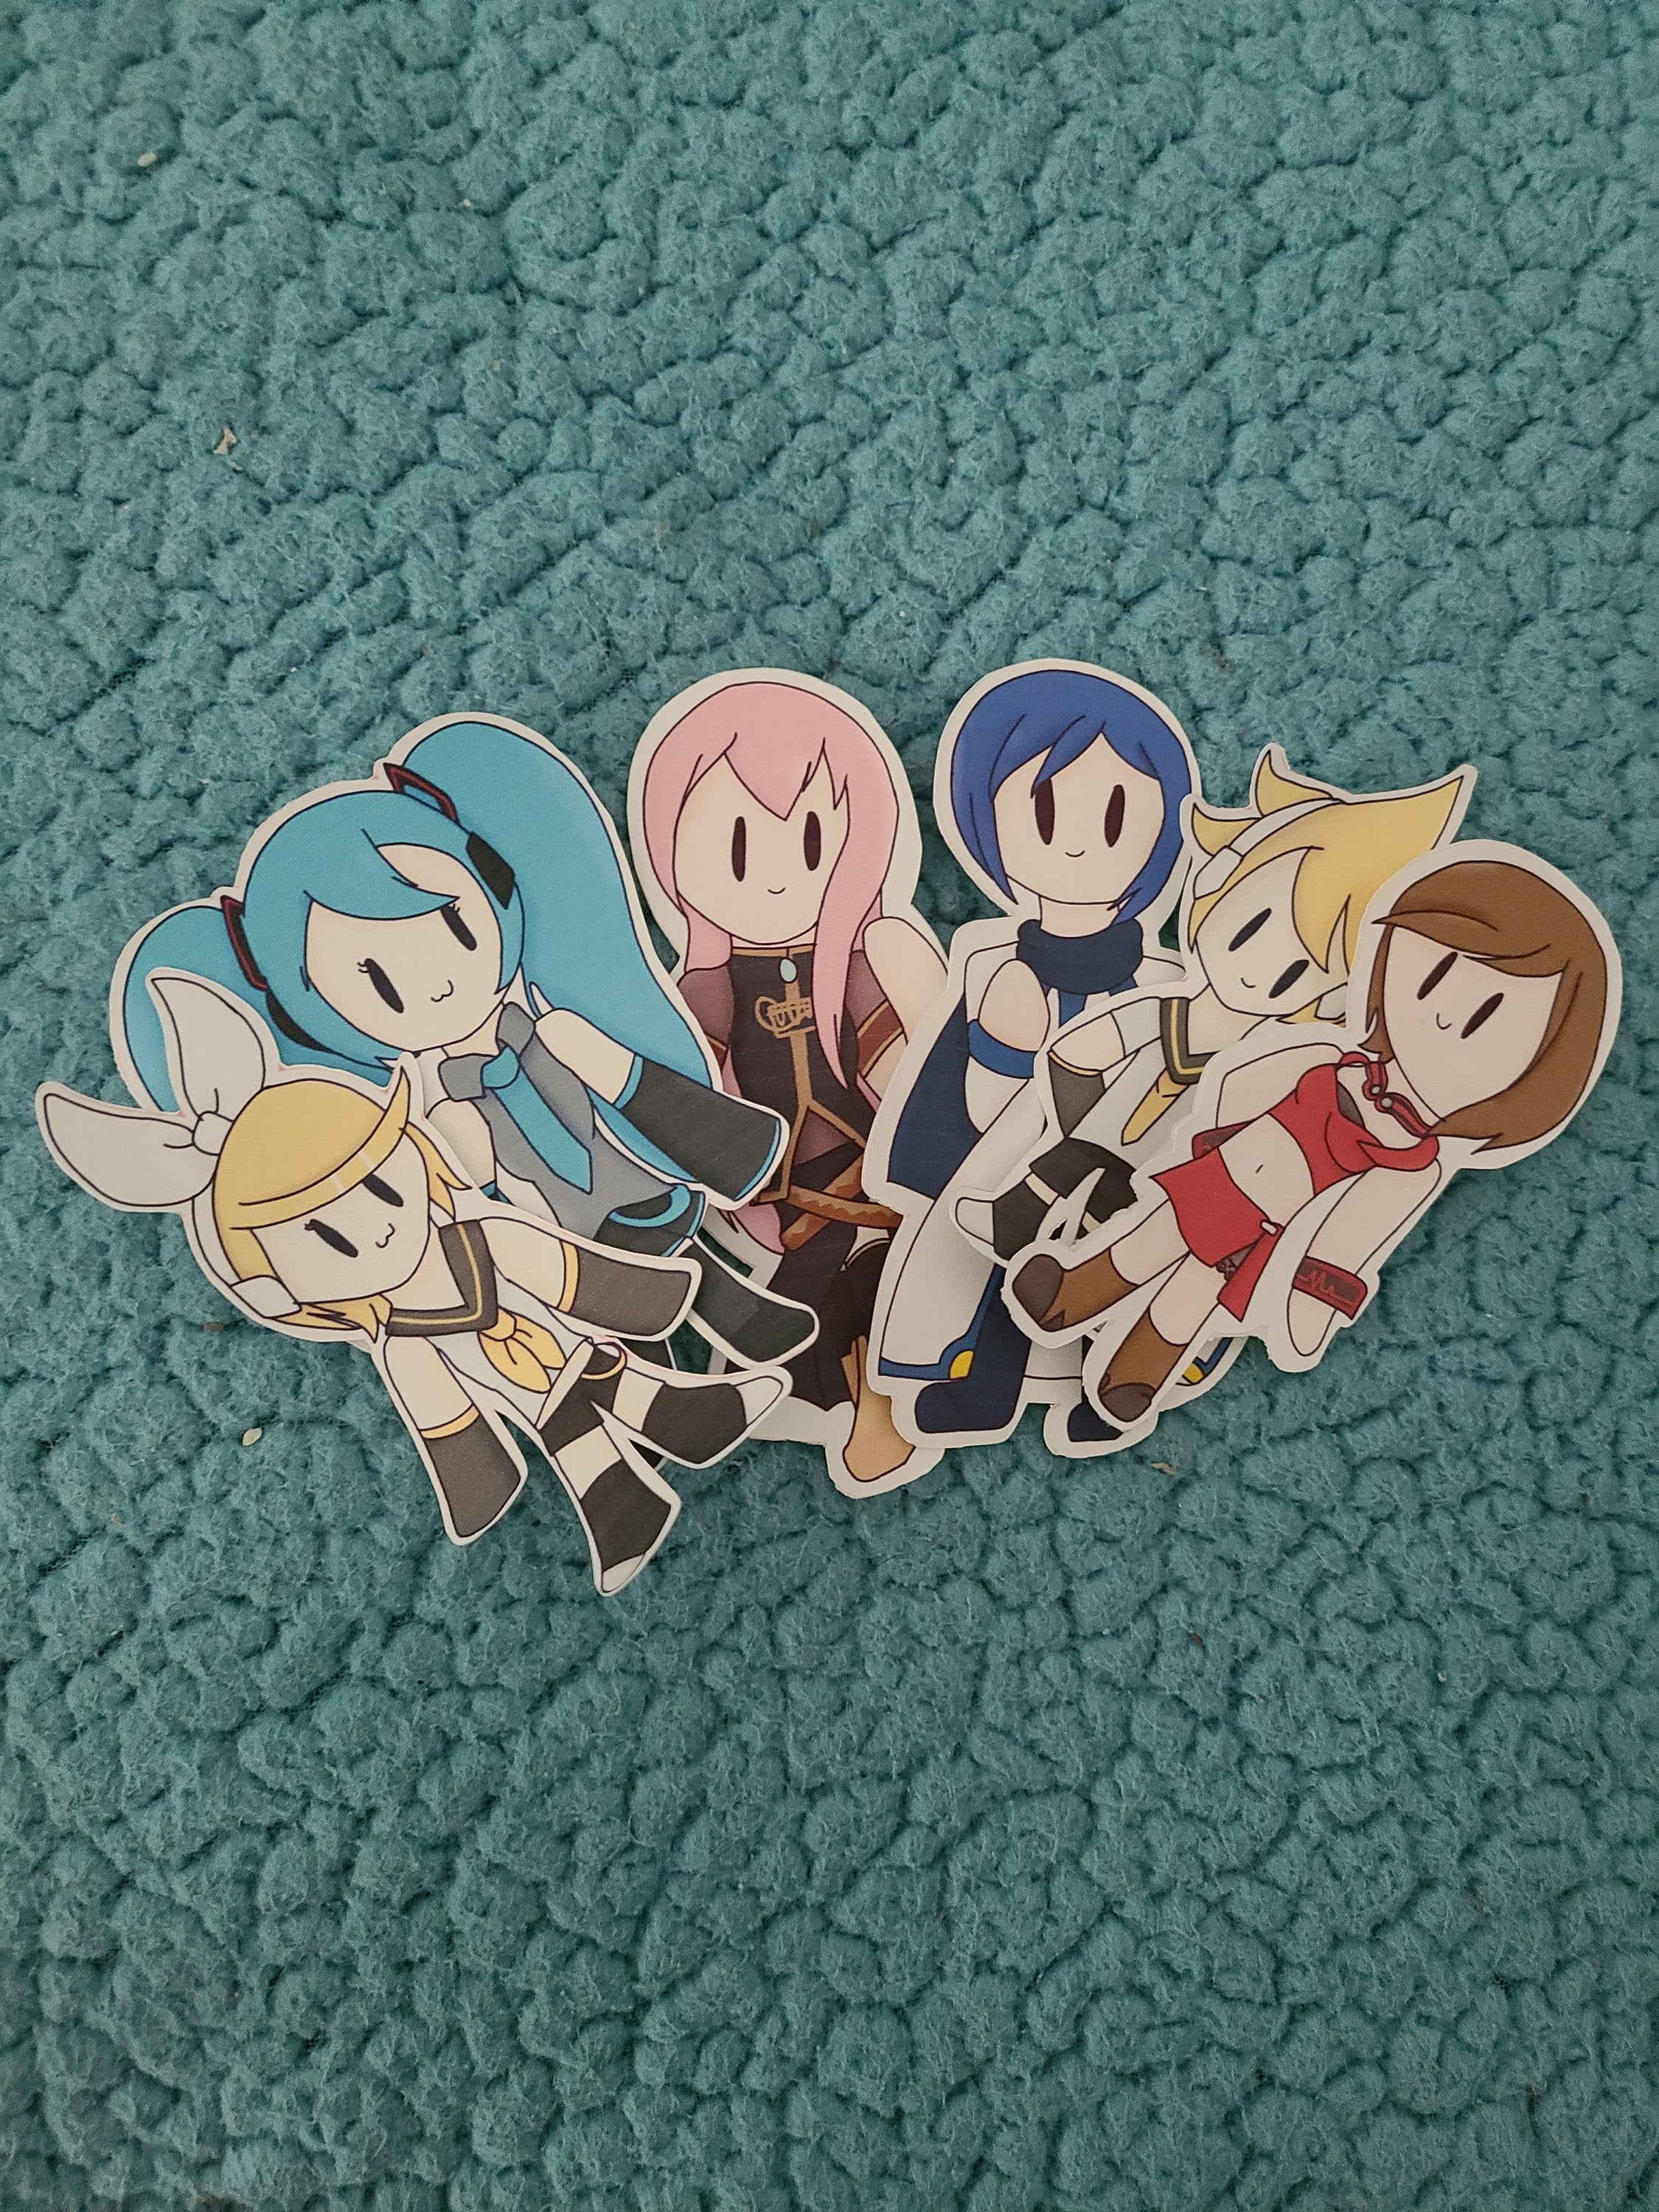 Vocaloid Stickers 